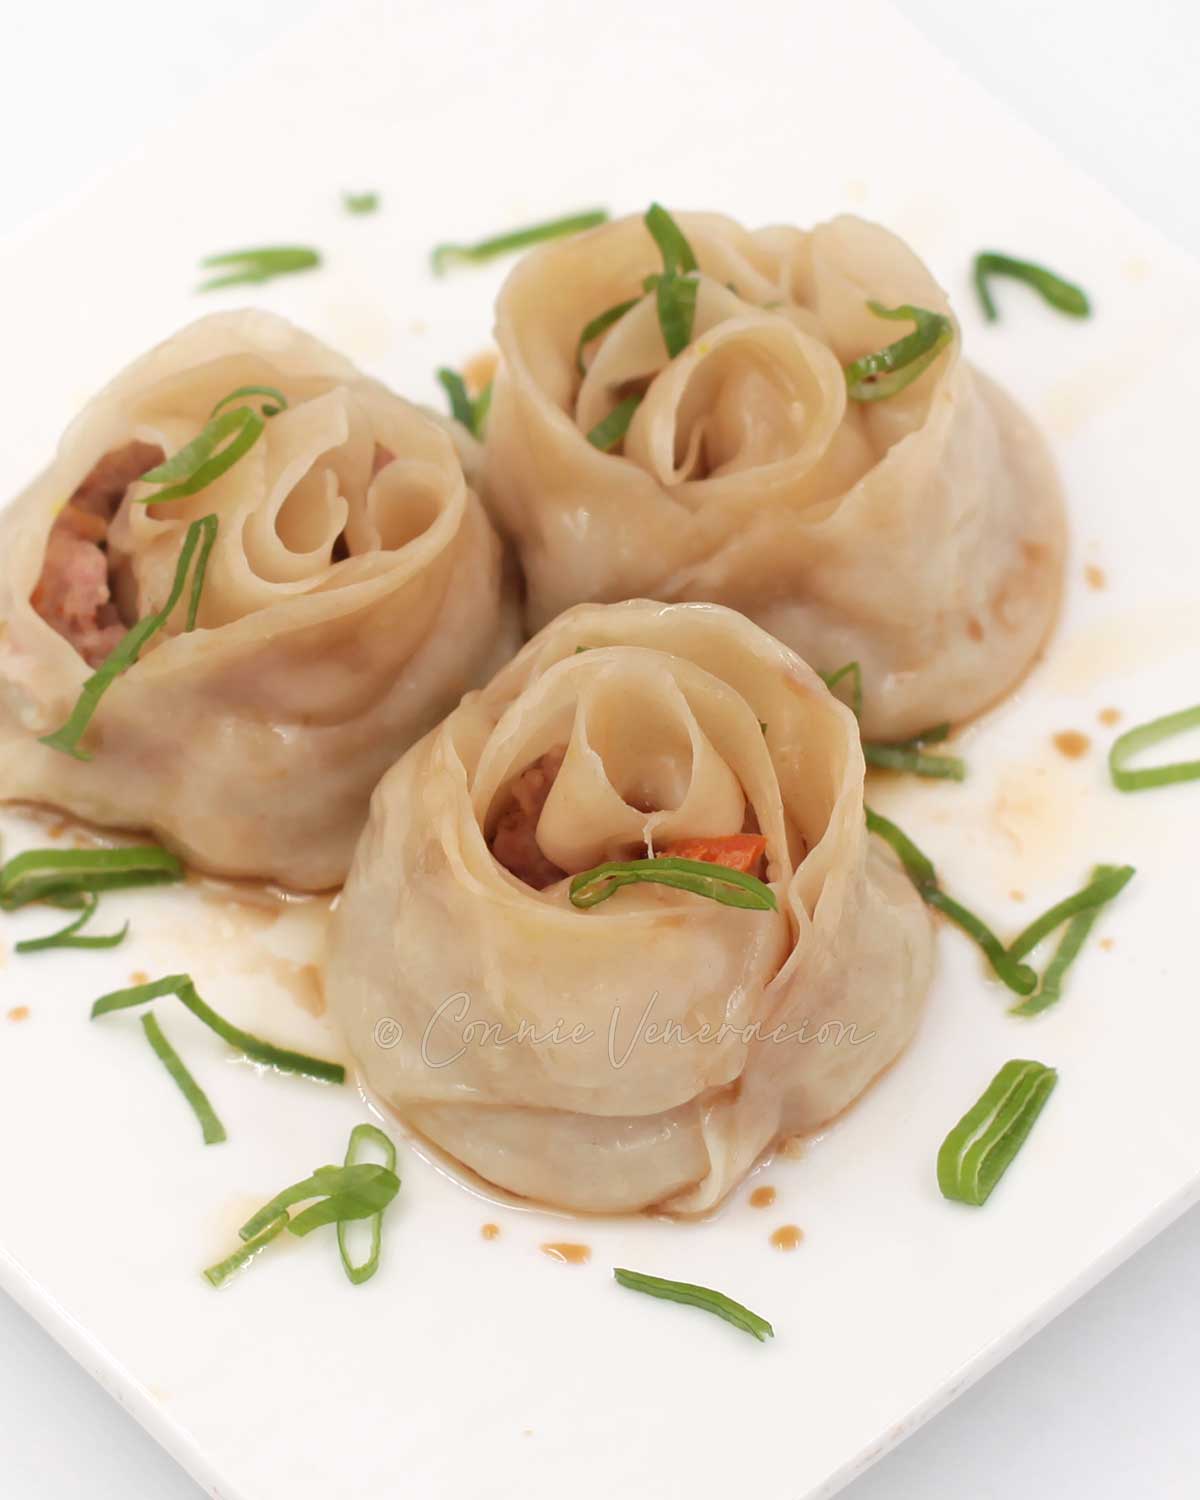 Rosebud dumplings on white plate